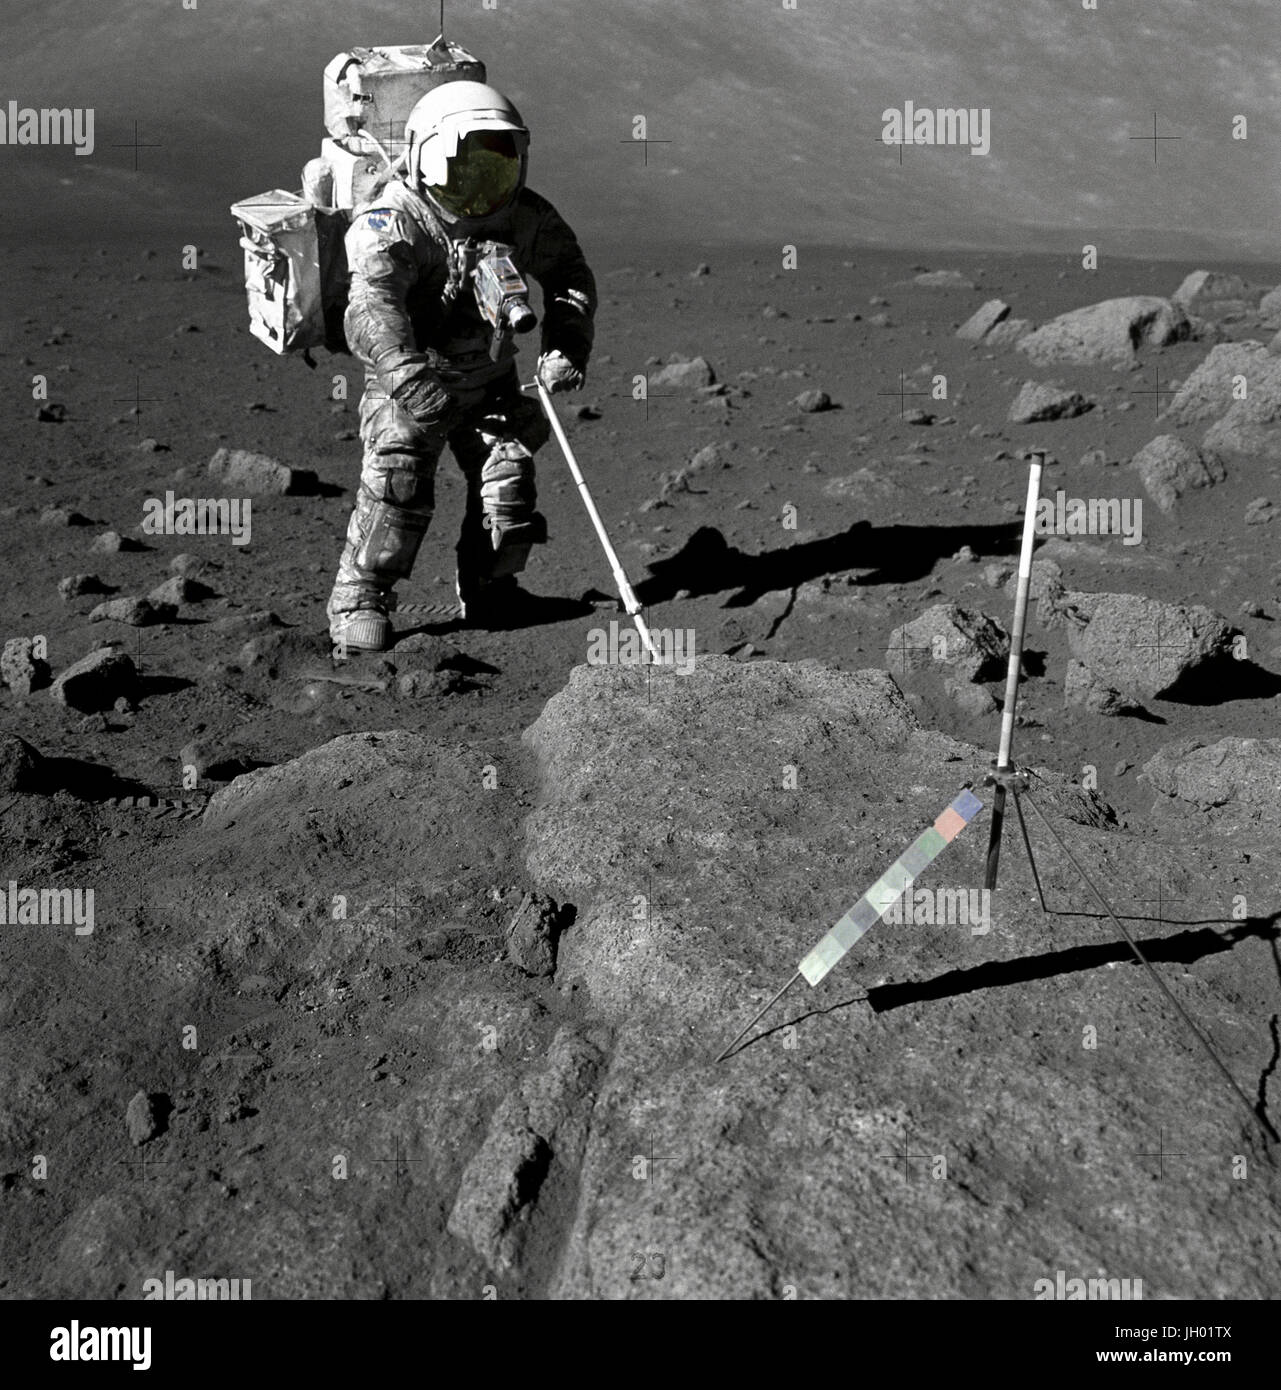 Schmitt mit Lunar Schmutz bedeckt. Geologe-Astronaut Harrison Schmitt, Pilot der Mondlandefähre Apollo 17, nutzt eine einstellbare Sampling-Schaufel abzurufenden lunare Proben während der zweiten Extravehicular Activity (EVA-2), auf Station 5 bei den Taurus - Littrow-Landeplatz. Der Zusammenhalt des lunar Bodens wird durch das "schmutzige" auftreten von Schmitts Raumanzug heraus geboren. Ein Gnomon ist oben auf dem großen Felsen im Vordergrund. Gnomon Stadien Rute auf einem Stativ montiert und dient als Indikator für die Schwerkraft Vektor und liefert genaue vertikale Referenz und kalibriert Länge für die Bestimmung der Größe Stockfoto